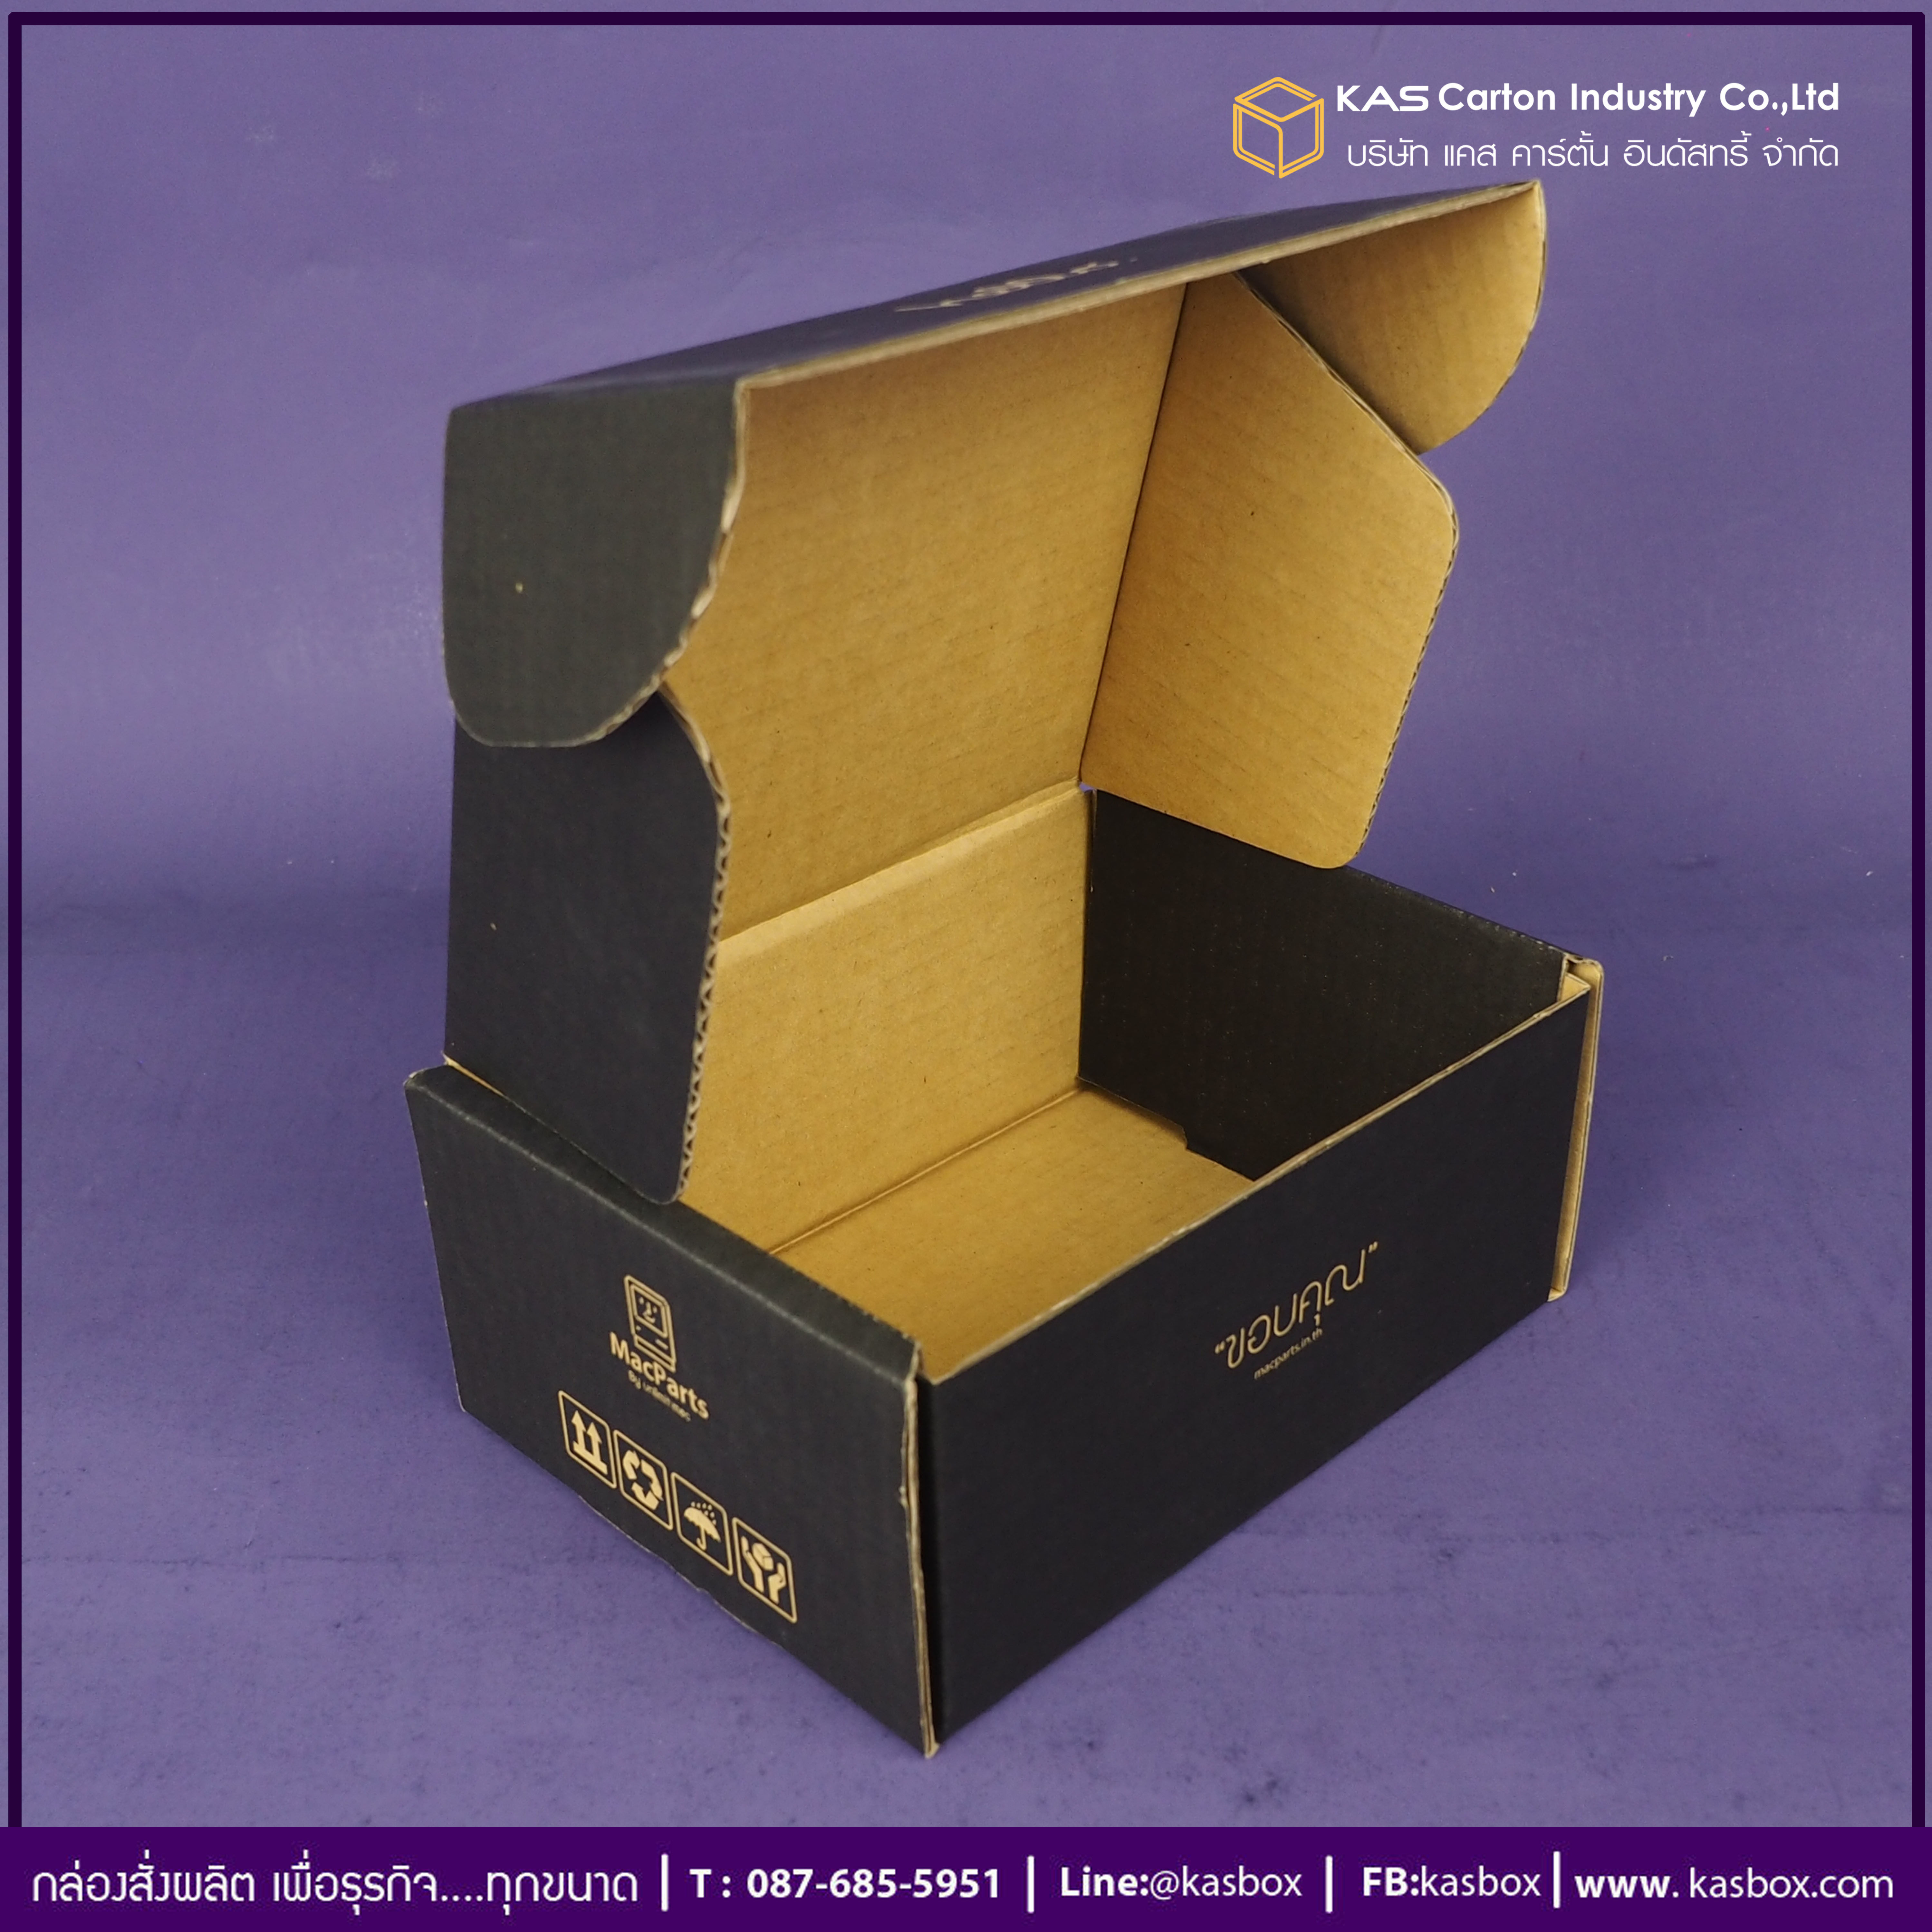 กล่องลูกฟูก สำเร็จรูป และ สั่งผลิต ตามความต้องการลูกค้า กล่องกระดาษลูกฟูก E-Commerce